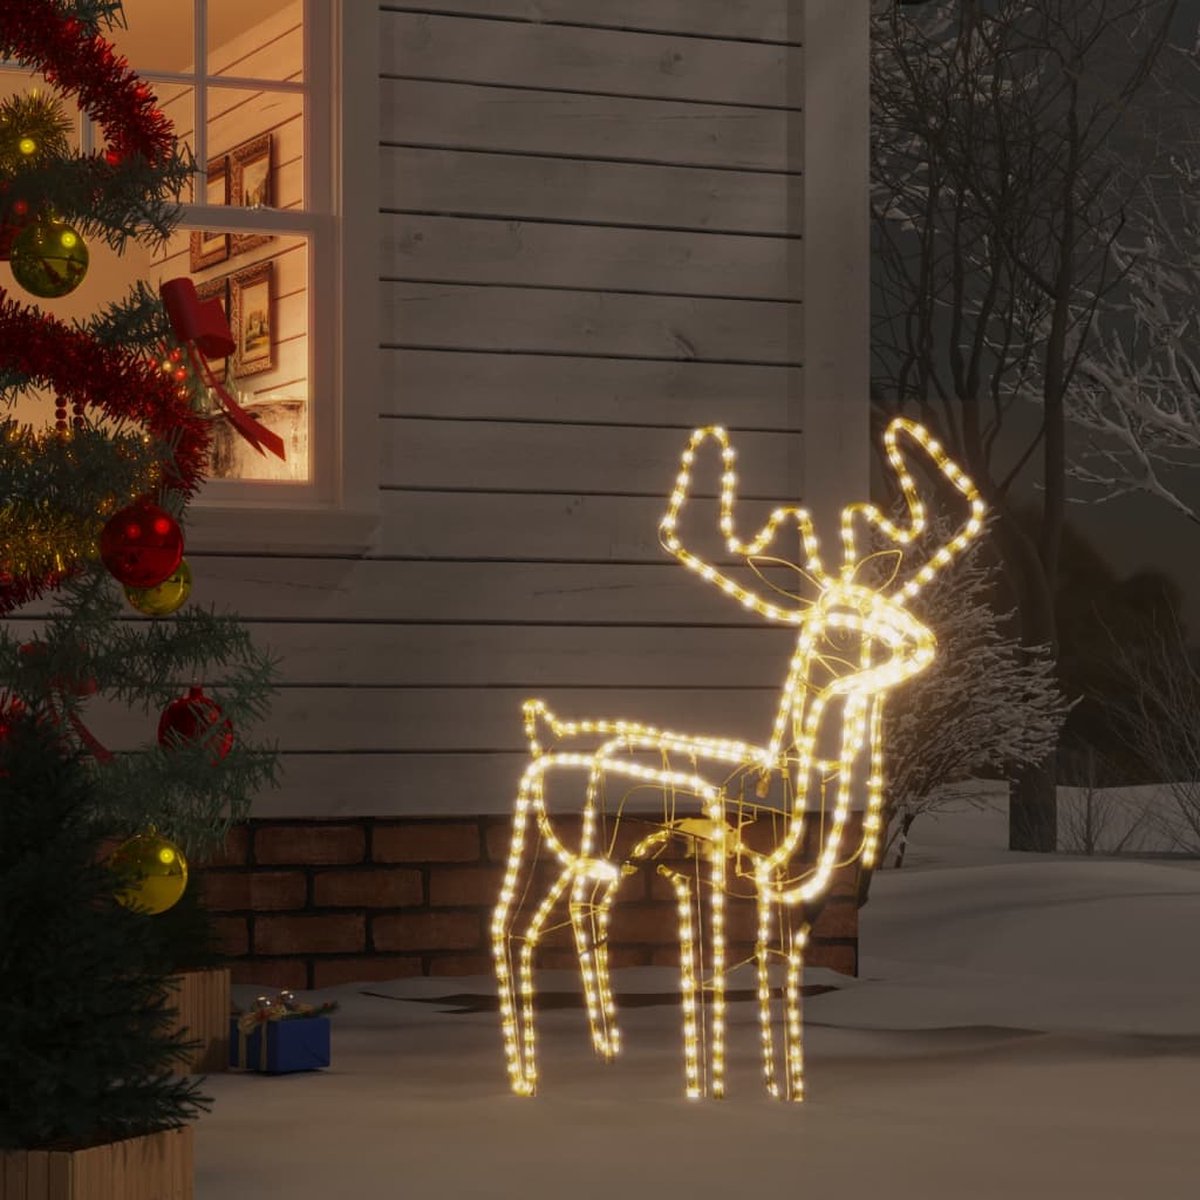 The Living Store Kerstfiguur Rendier - Tuin- en Binnenruimte Decoratie - PVC - Weerbestendig - Inklapbaar - Schuddende Kop - Energiezuinige LED